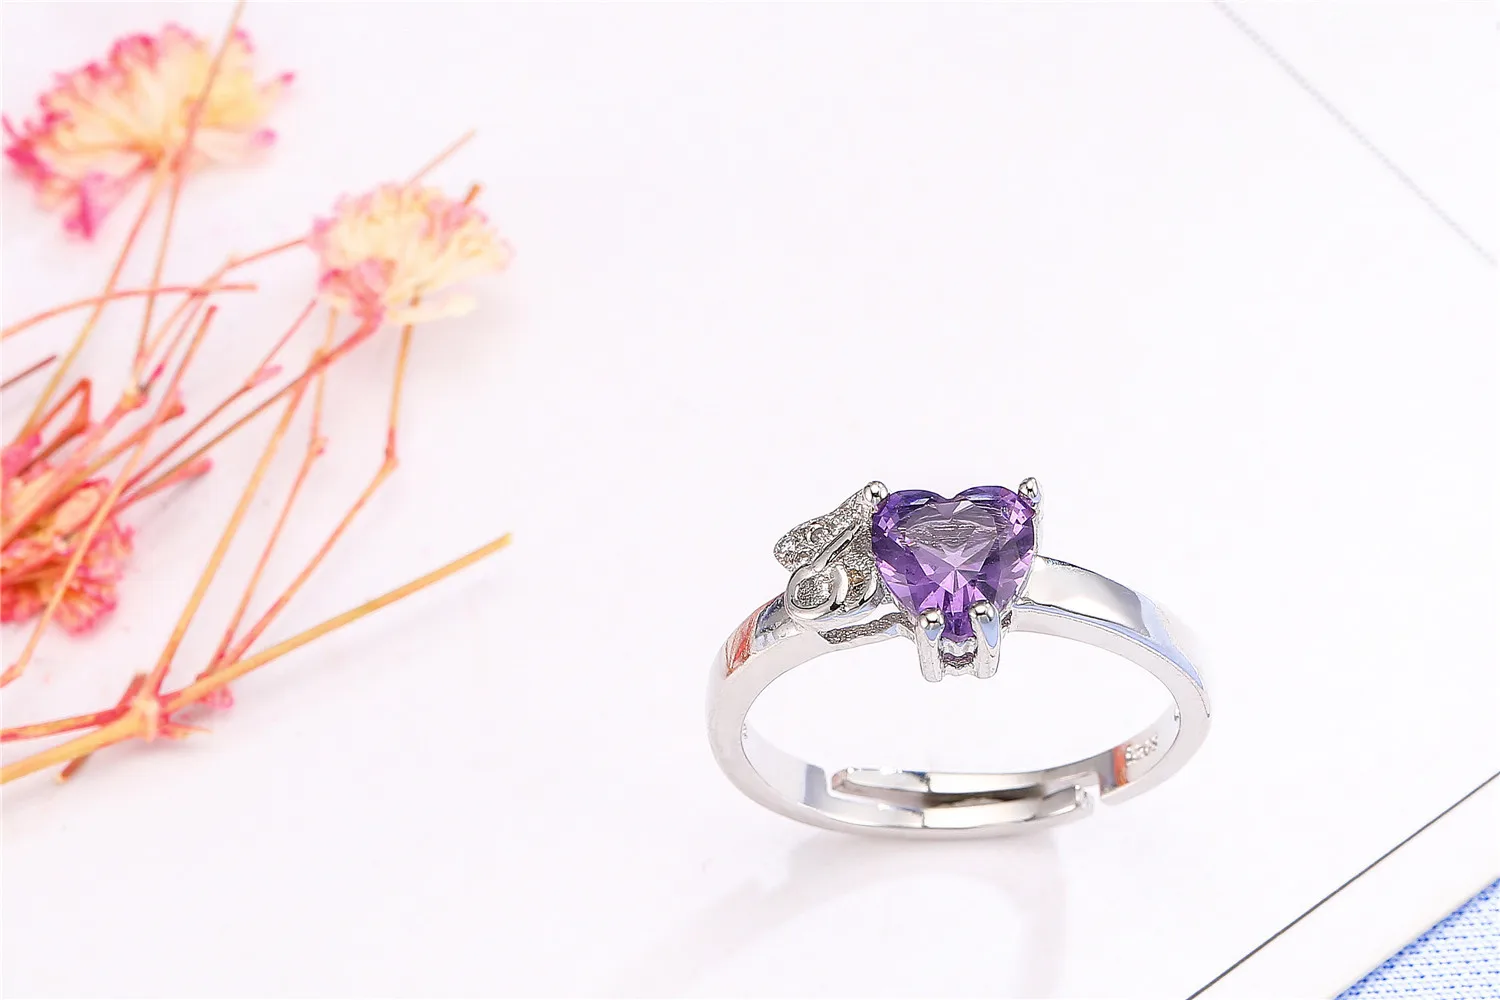 OMHXZJ Европейский модный женский мужской праздничный свадебный подарок сердце фиолетовый аметист AAA циркон кольцо из стерлингового серебра 925 RR275